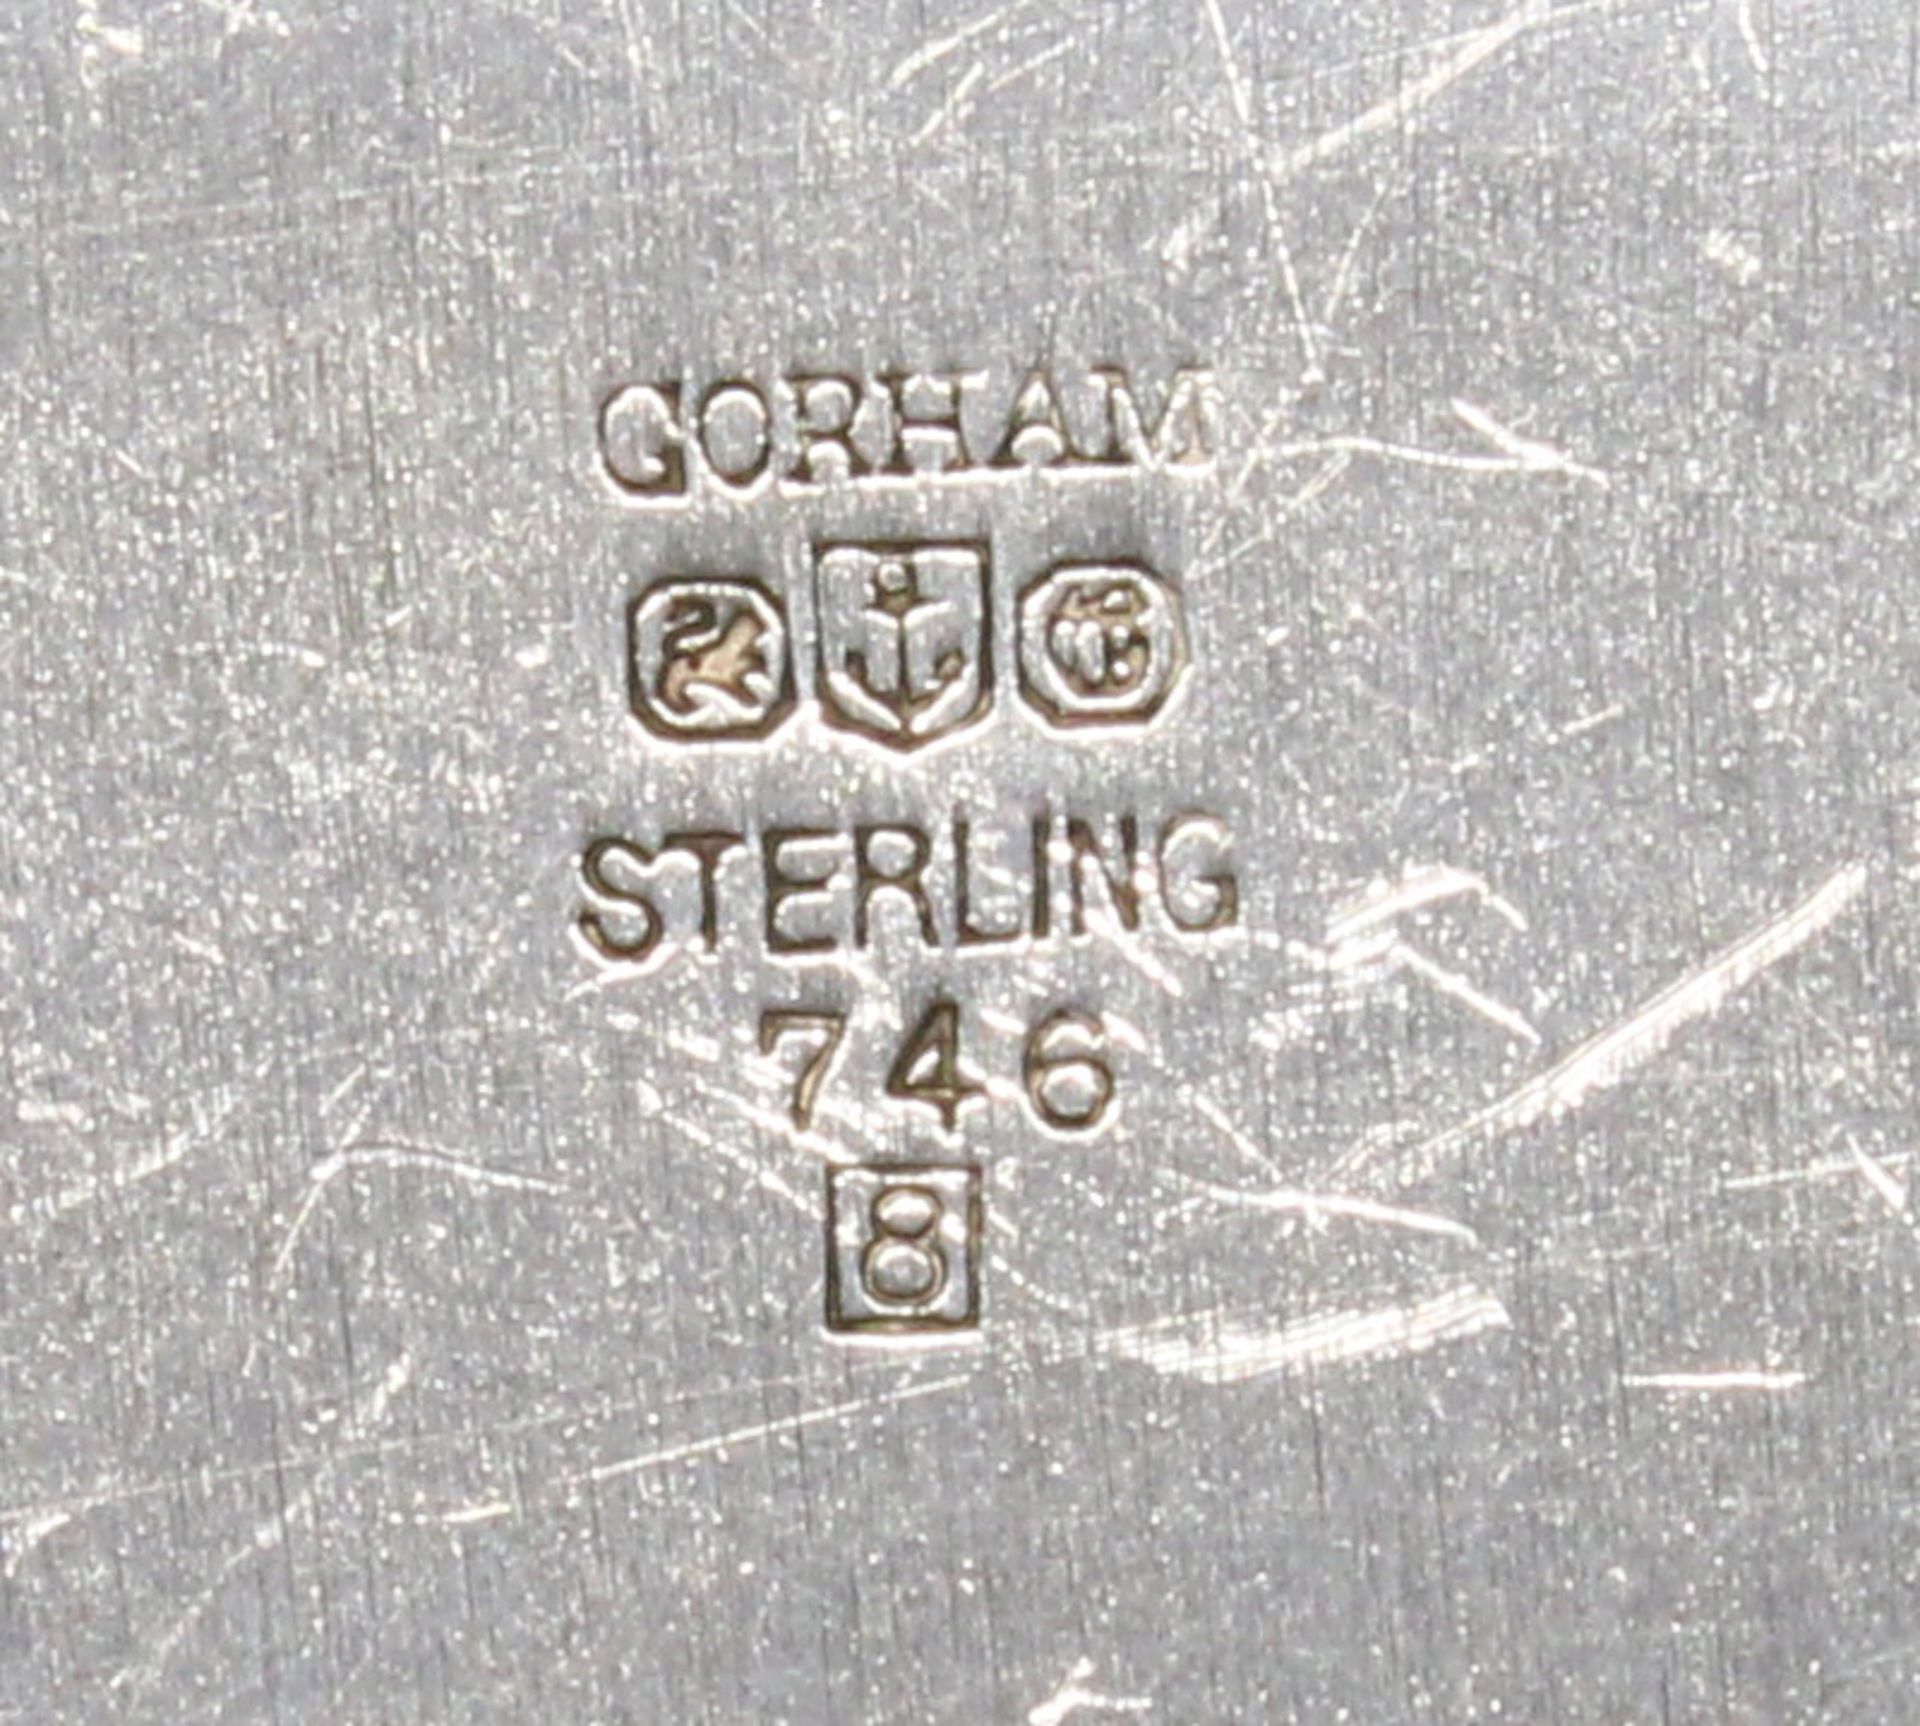 Unterteller, Silber 925, Gorham, Fahne und Profilrand mit Rankenrelief, ø 26.5 cm, ca. 430 g, Kratz - Bild 2 aus 2